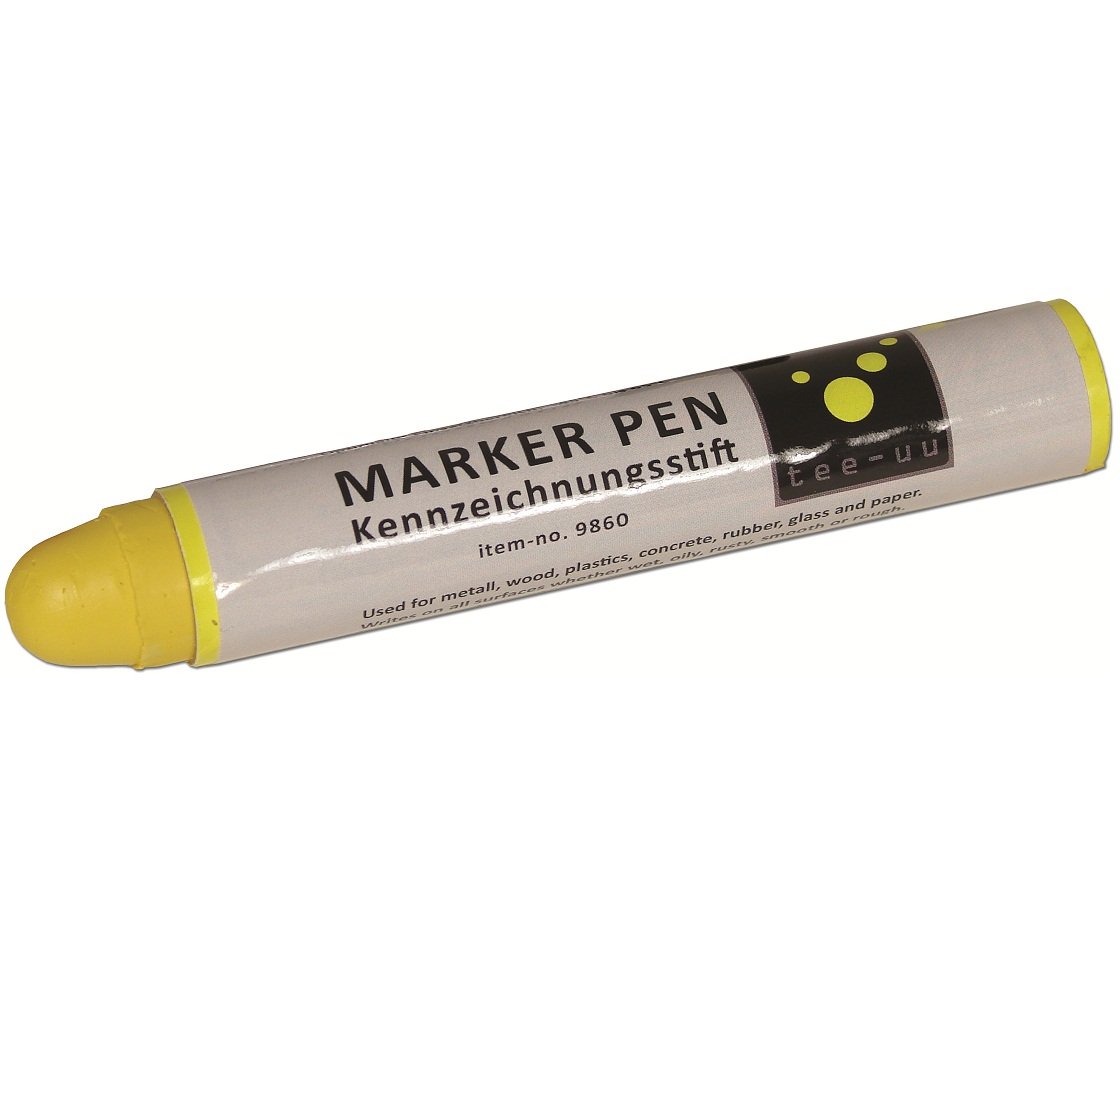 tee-uu® MARKER PEN Kennzeichnungsstift | Farbe: Gelb